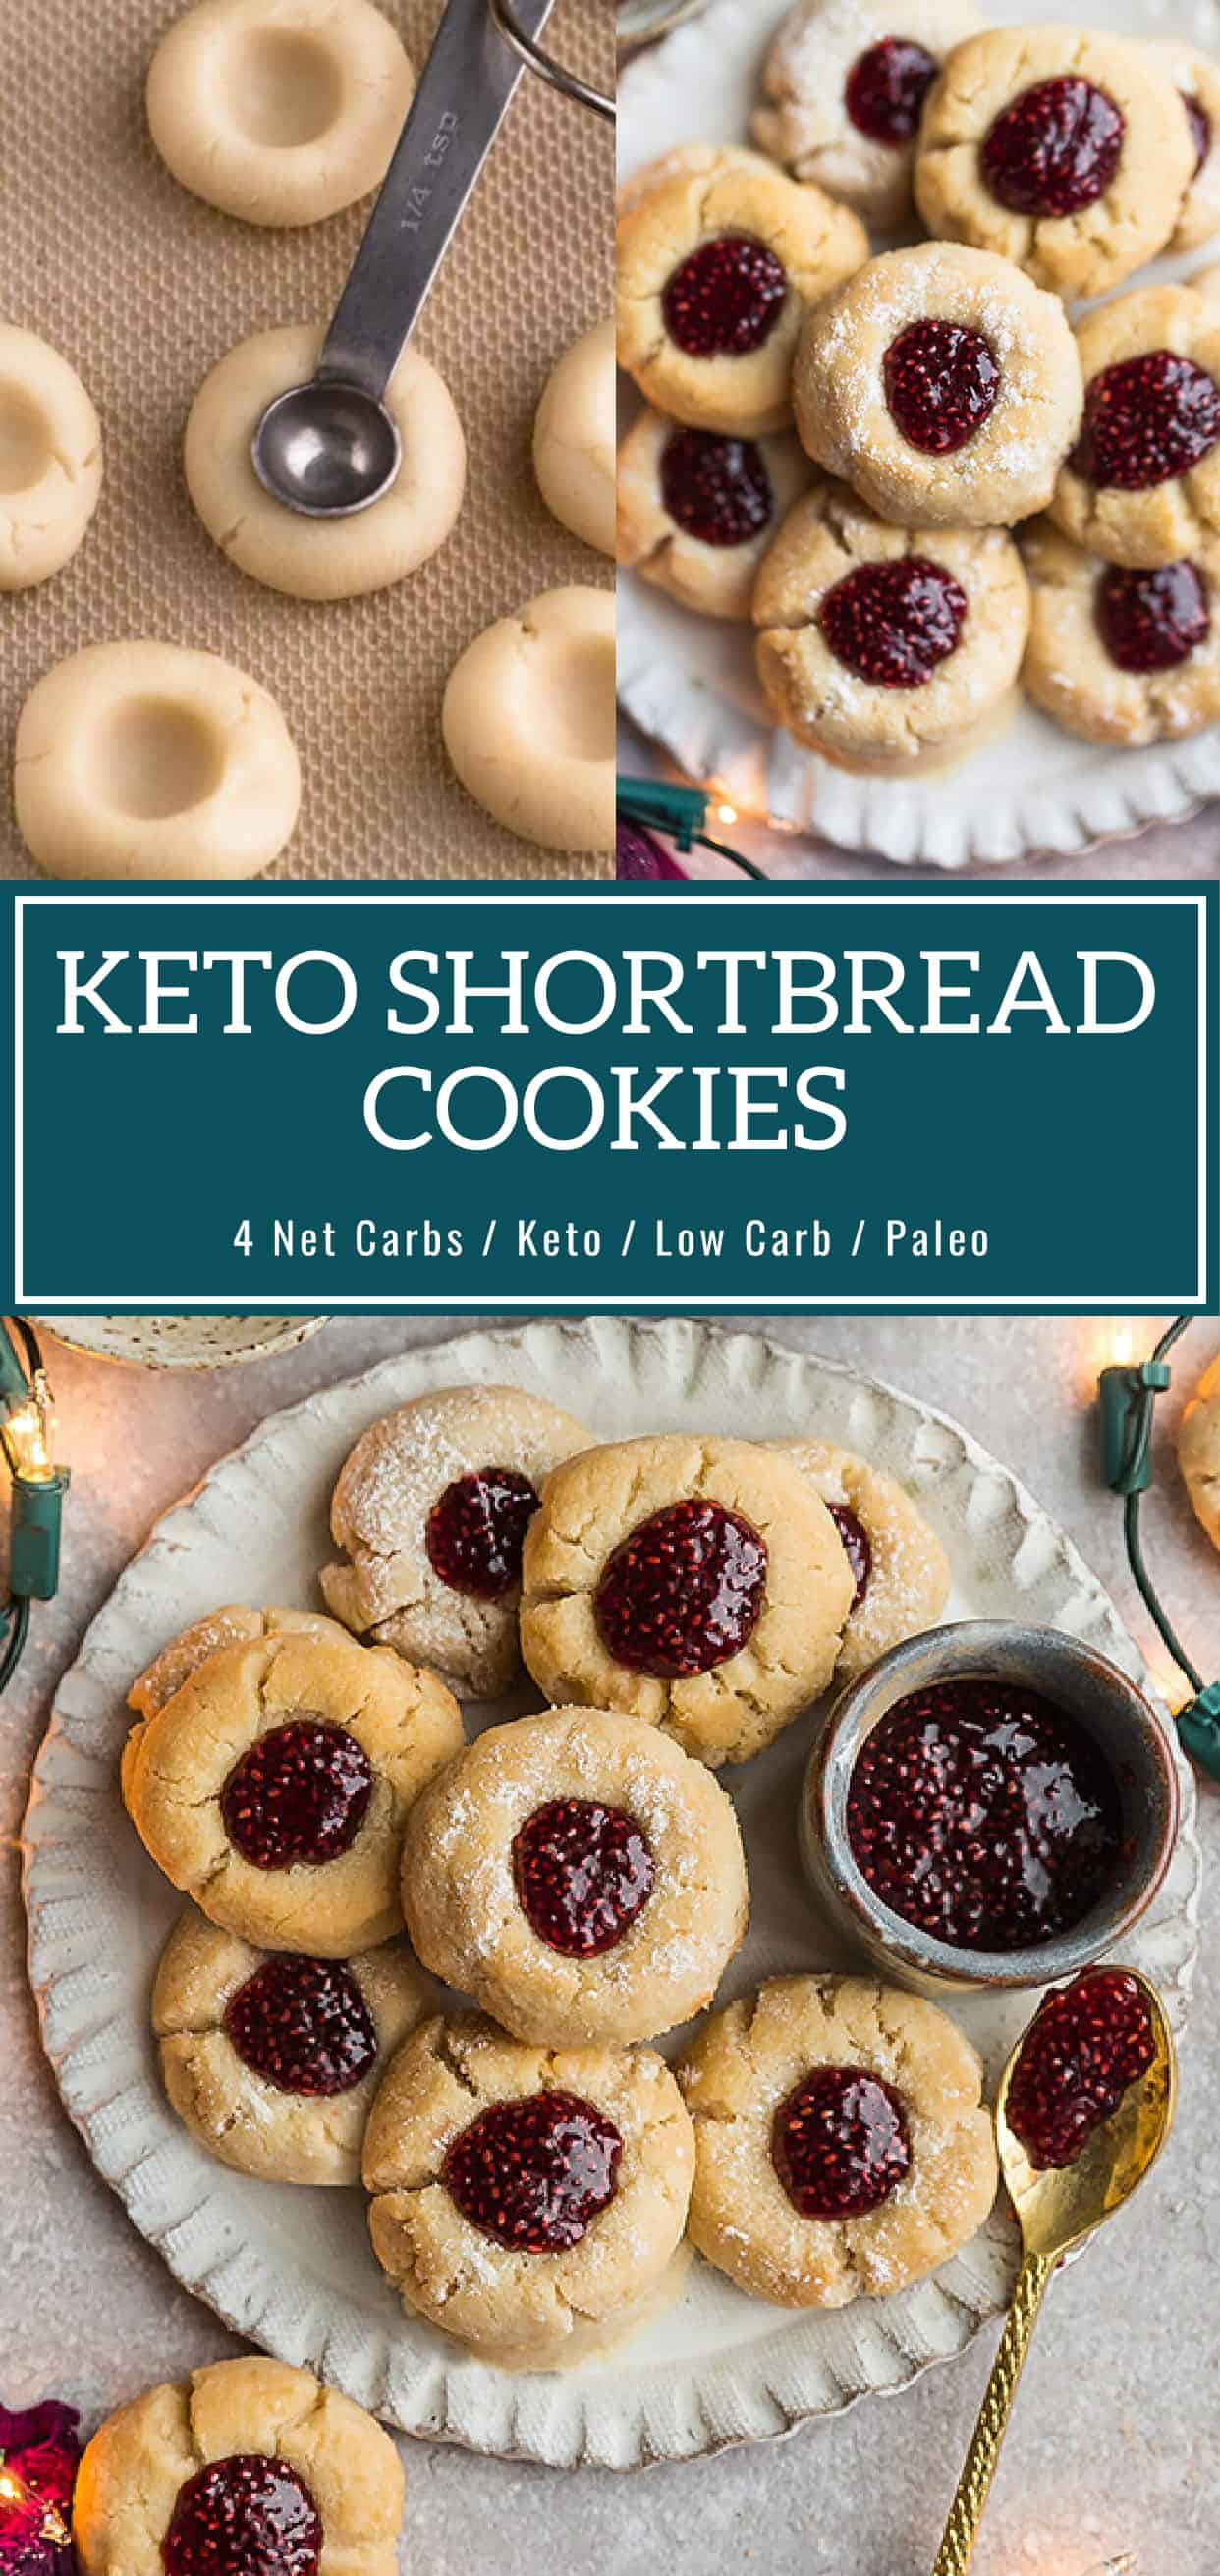 Keto Shortbread Cookies - Best Low Carb Jam Thumbprint Cookies